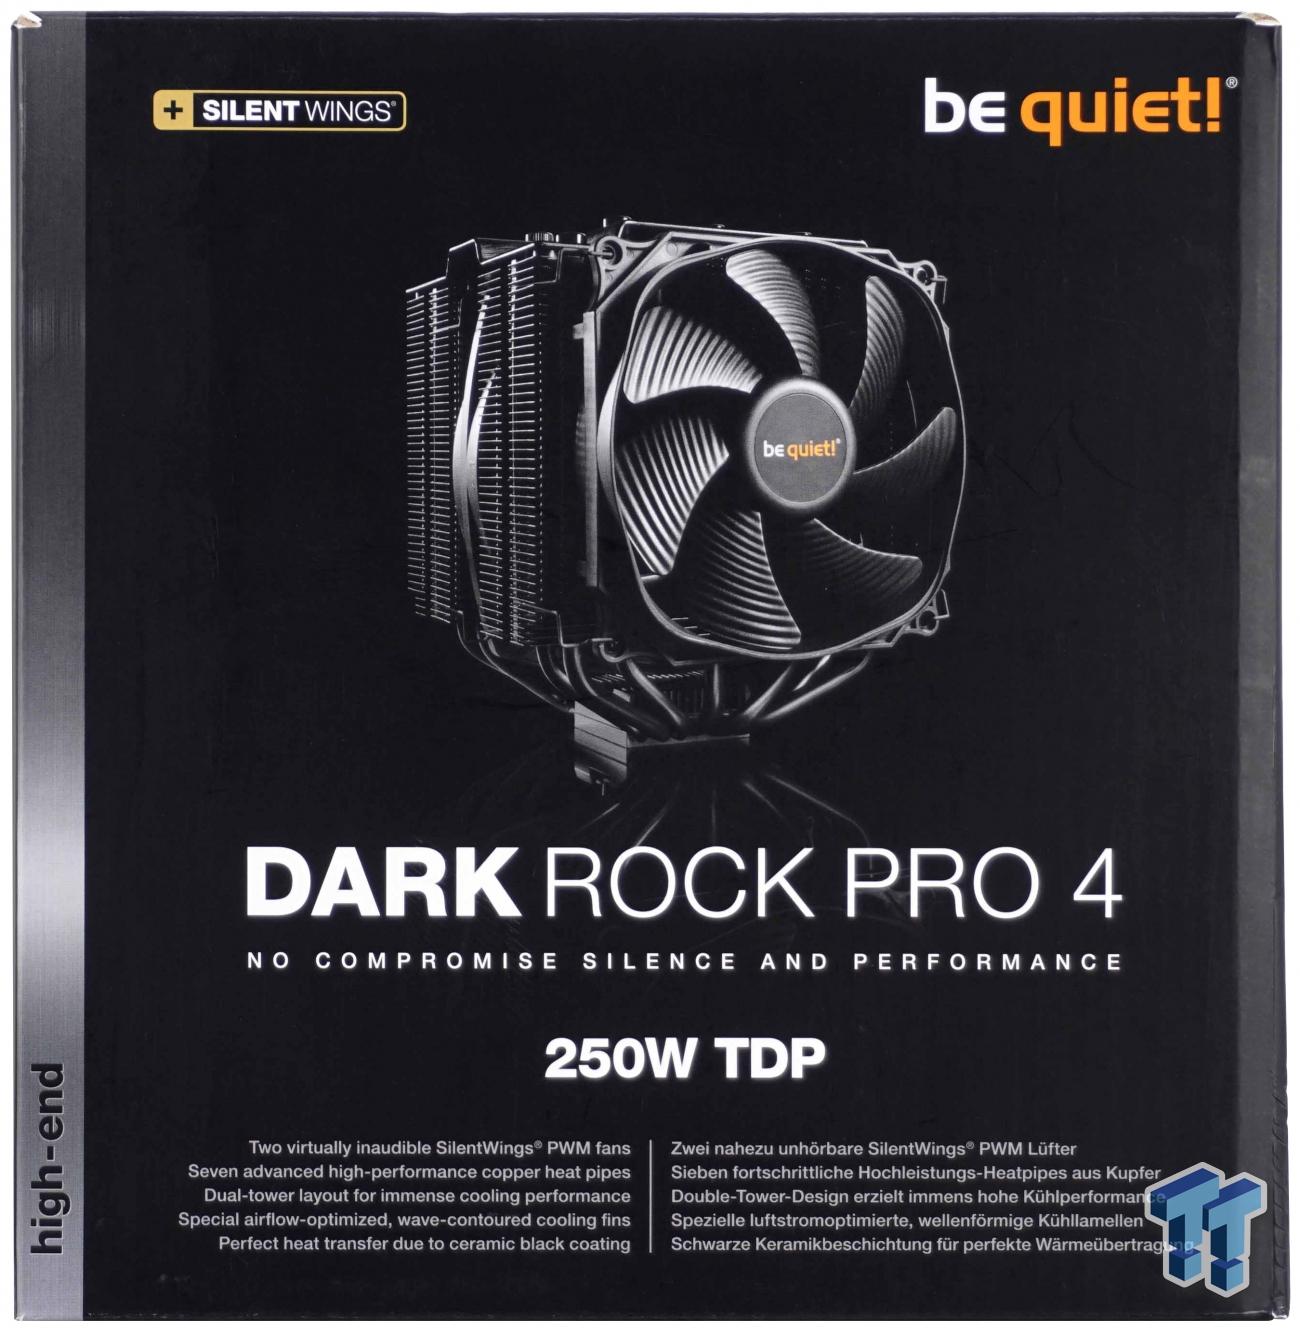 be quiet! Introduces Dark Rock Elite and Dark Rock Pro 5 Coolers